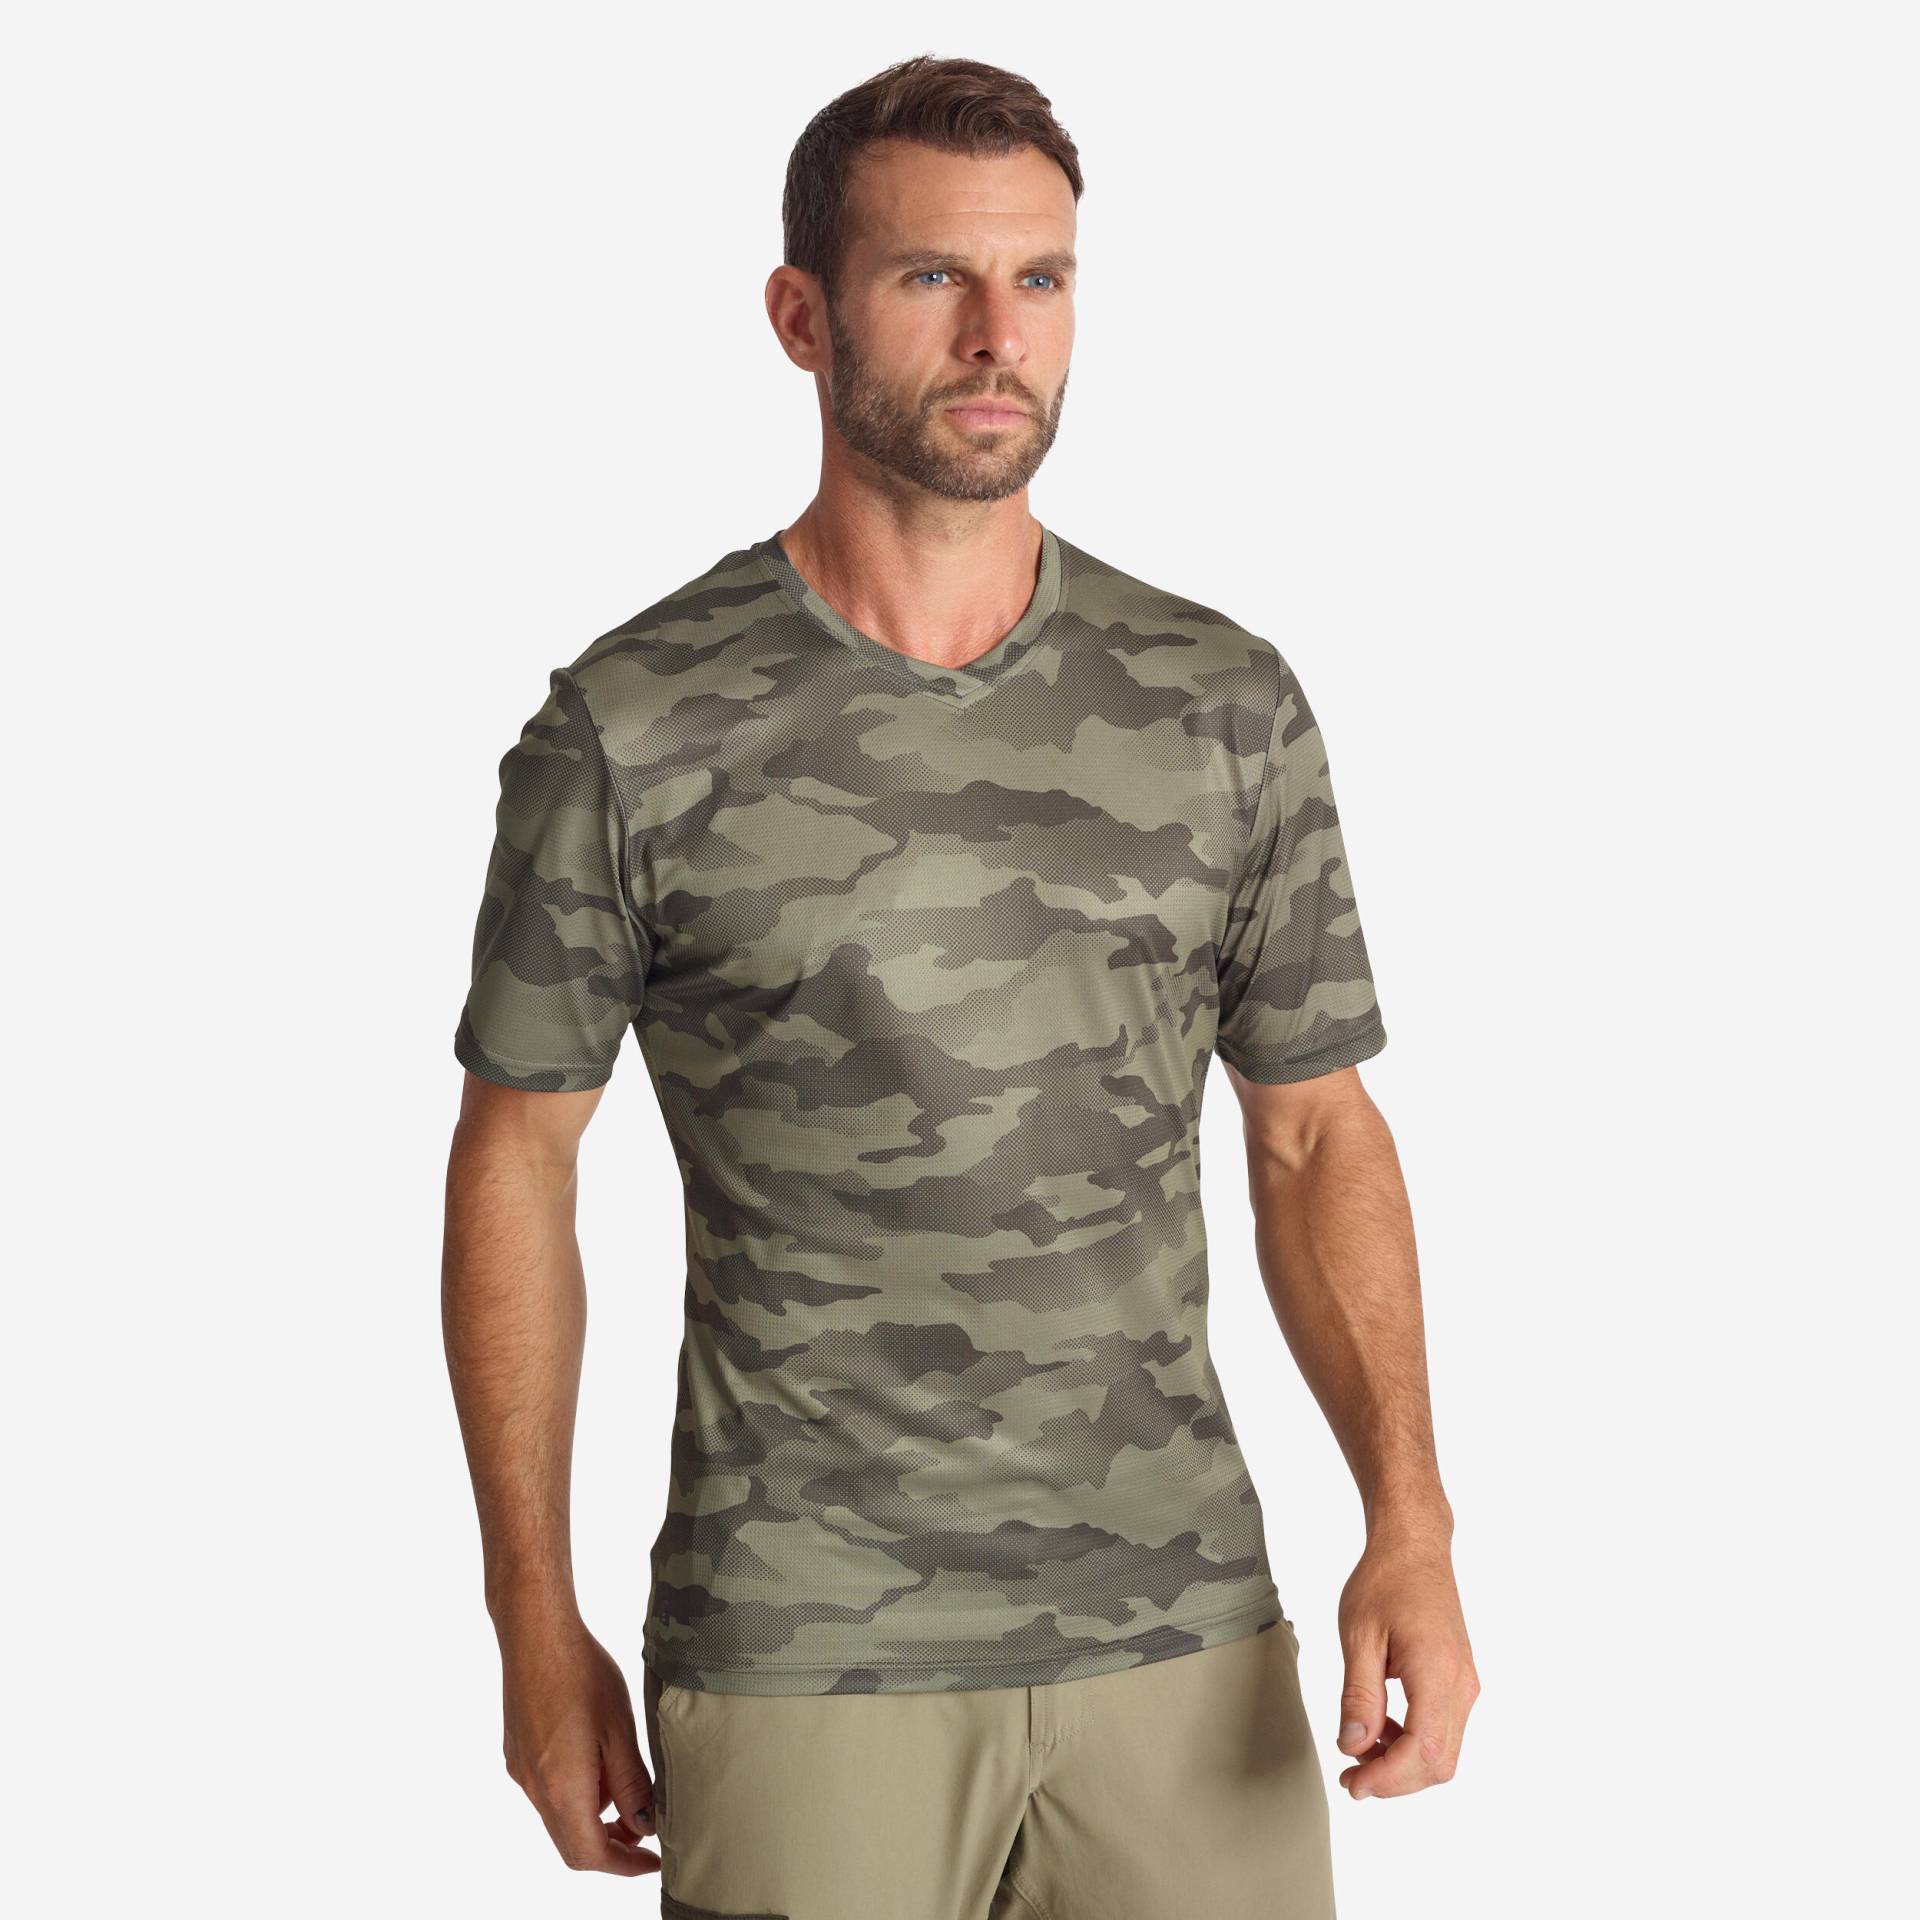 Jagd-T-Shirt 100 atmungsaktiv camouflage grün von SOLOGNAC